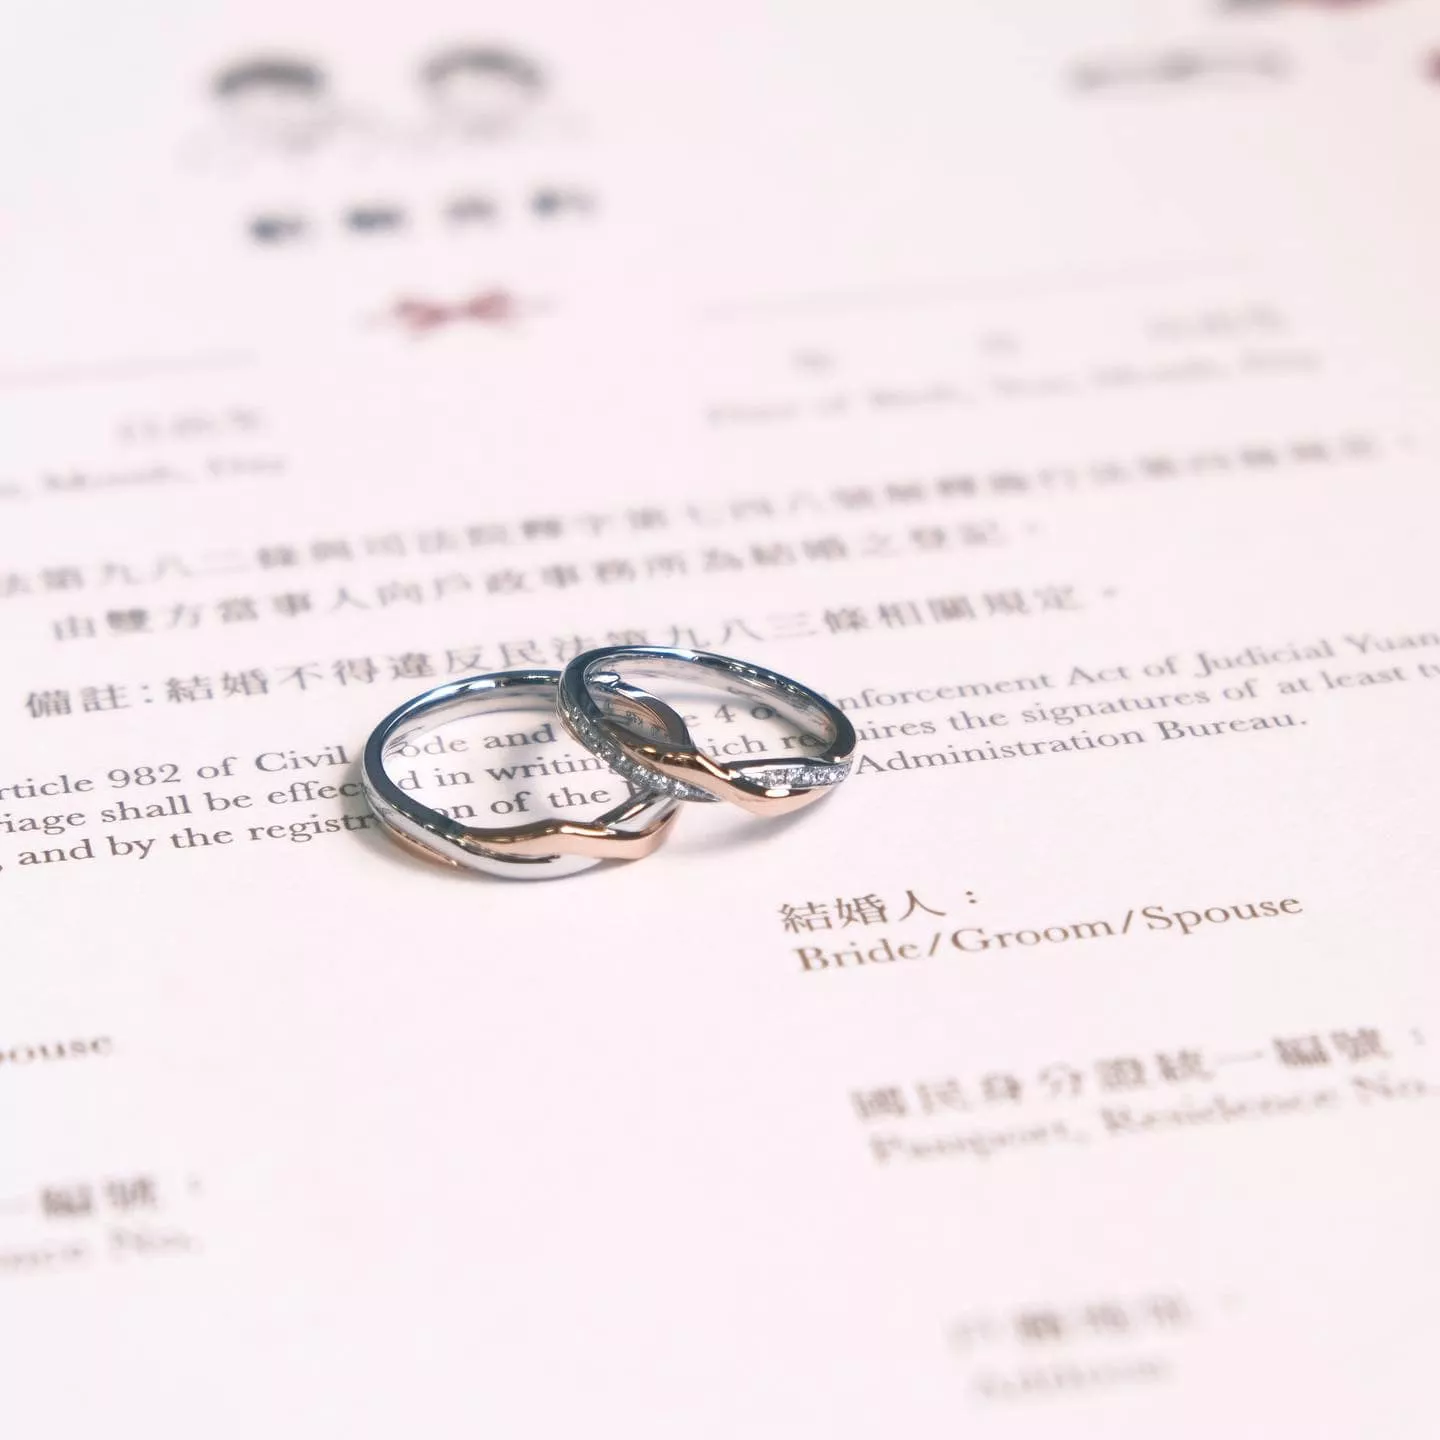 鉑金與18K玫瑰金的雙色婚戒，如果您不喜歡單一的婚戒材質，雙色款式更能打造特殊的設計感。